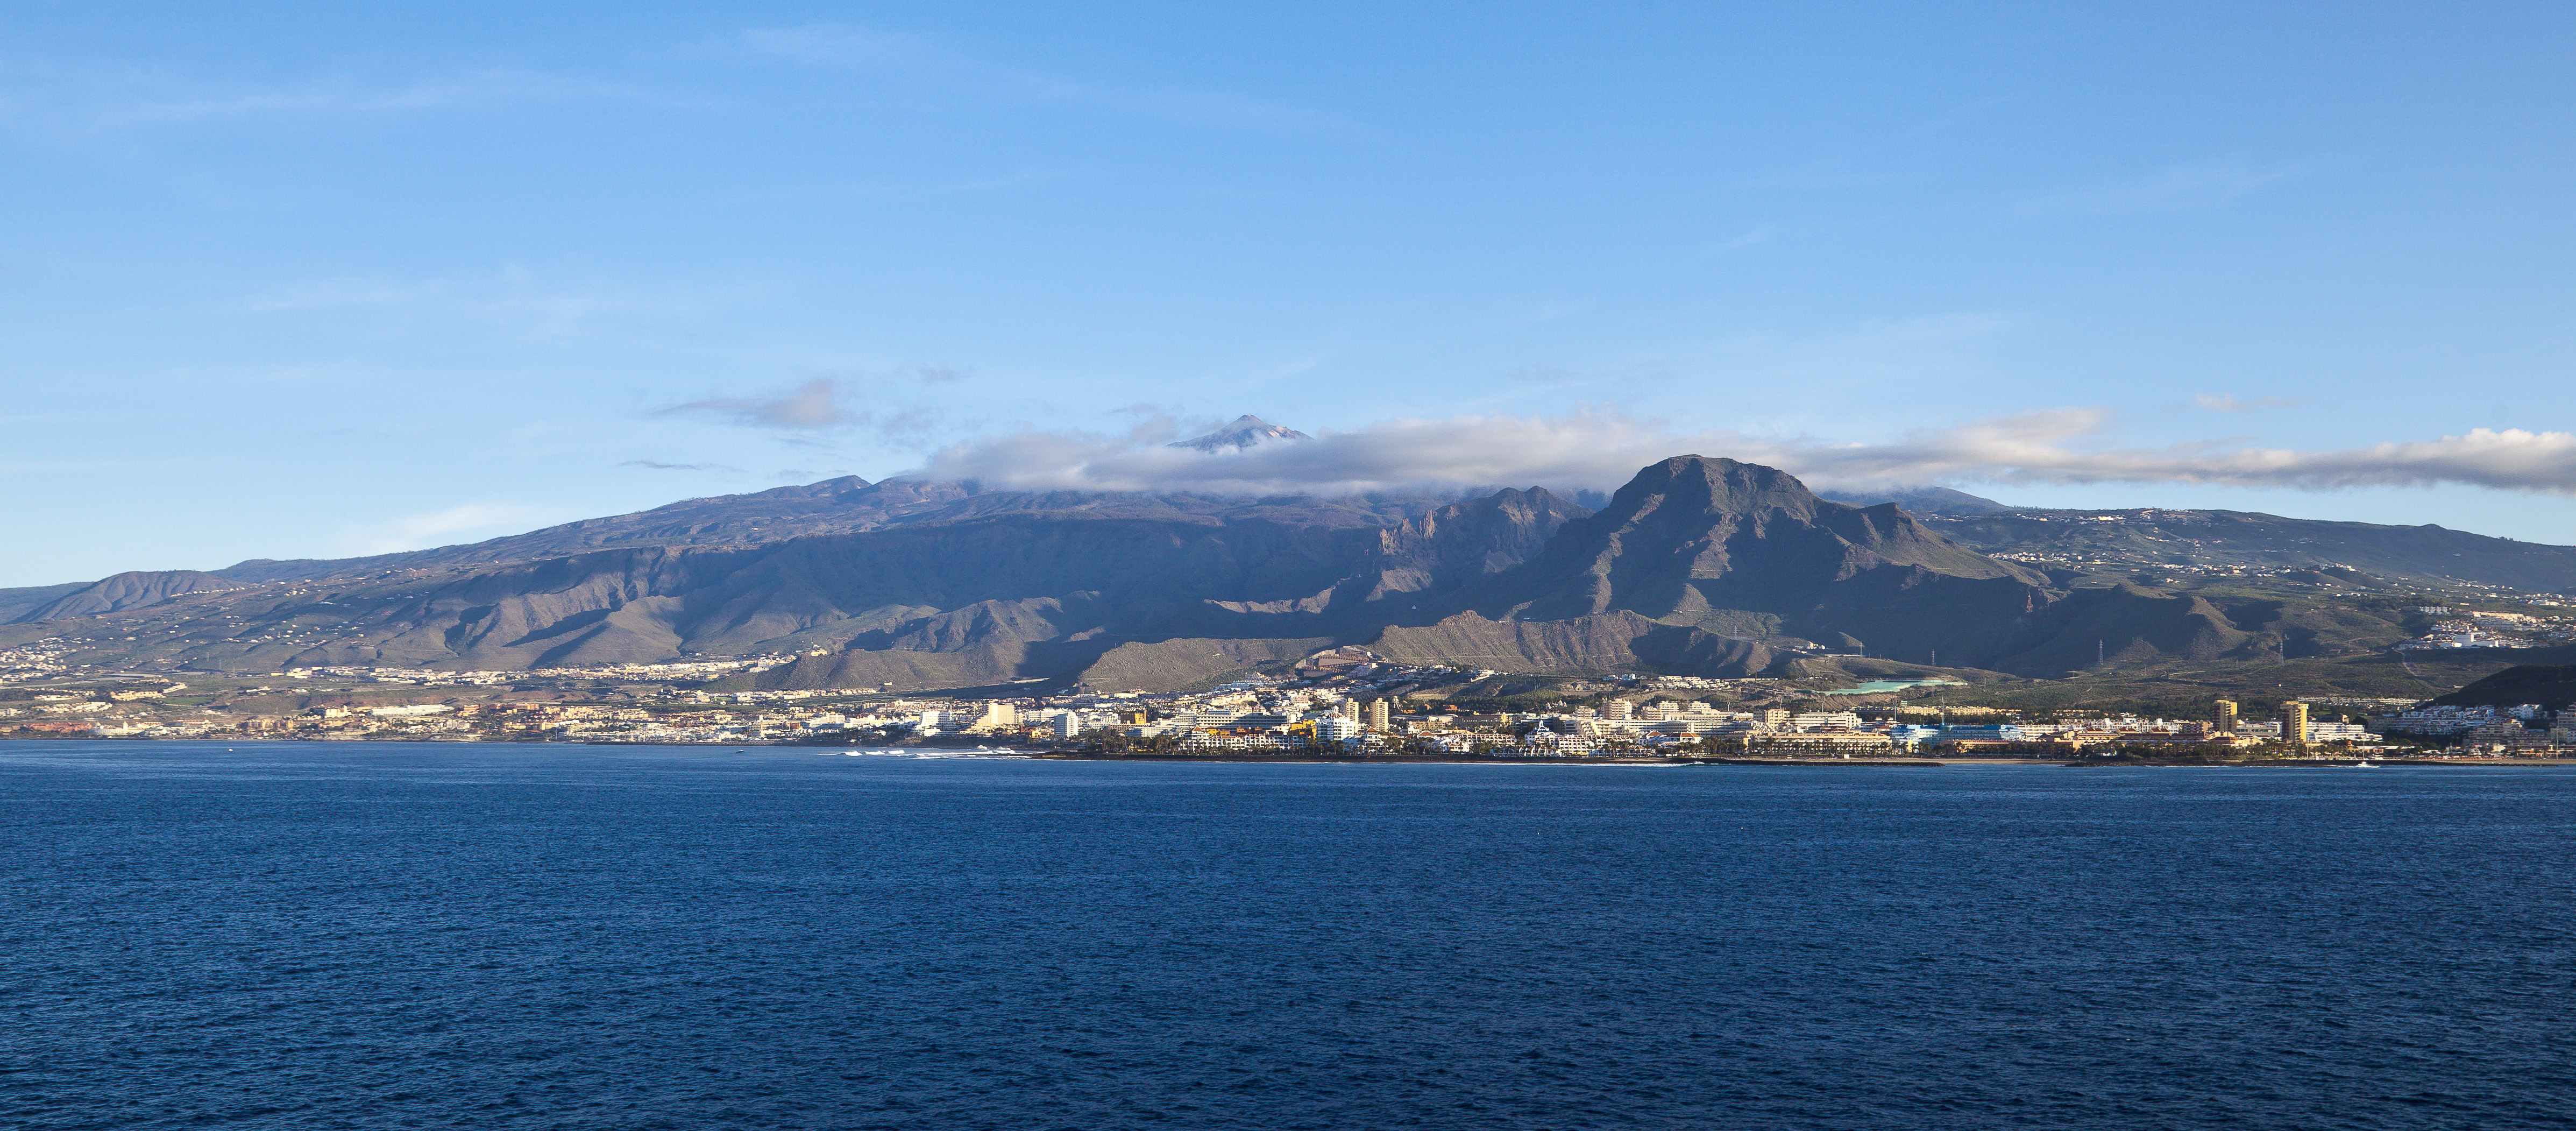 Vista de Los Cristianos, Tenerife, España, 2012-12-14, DD 02